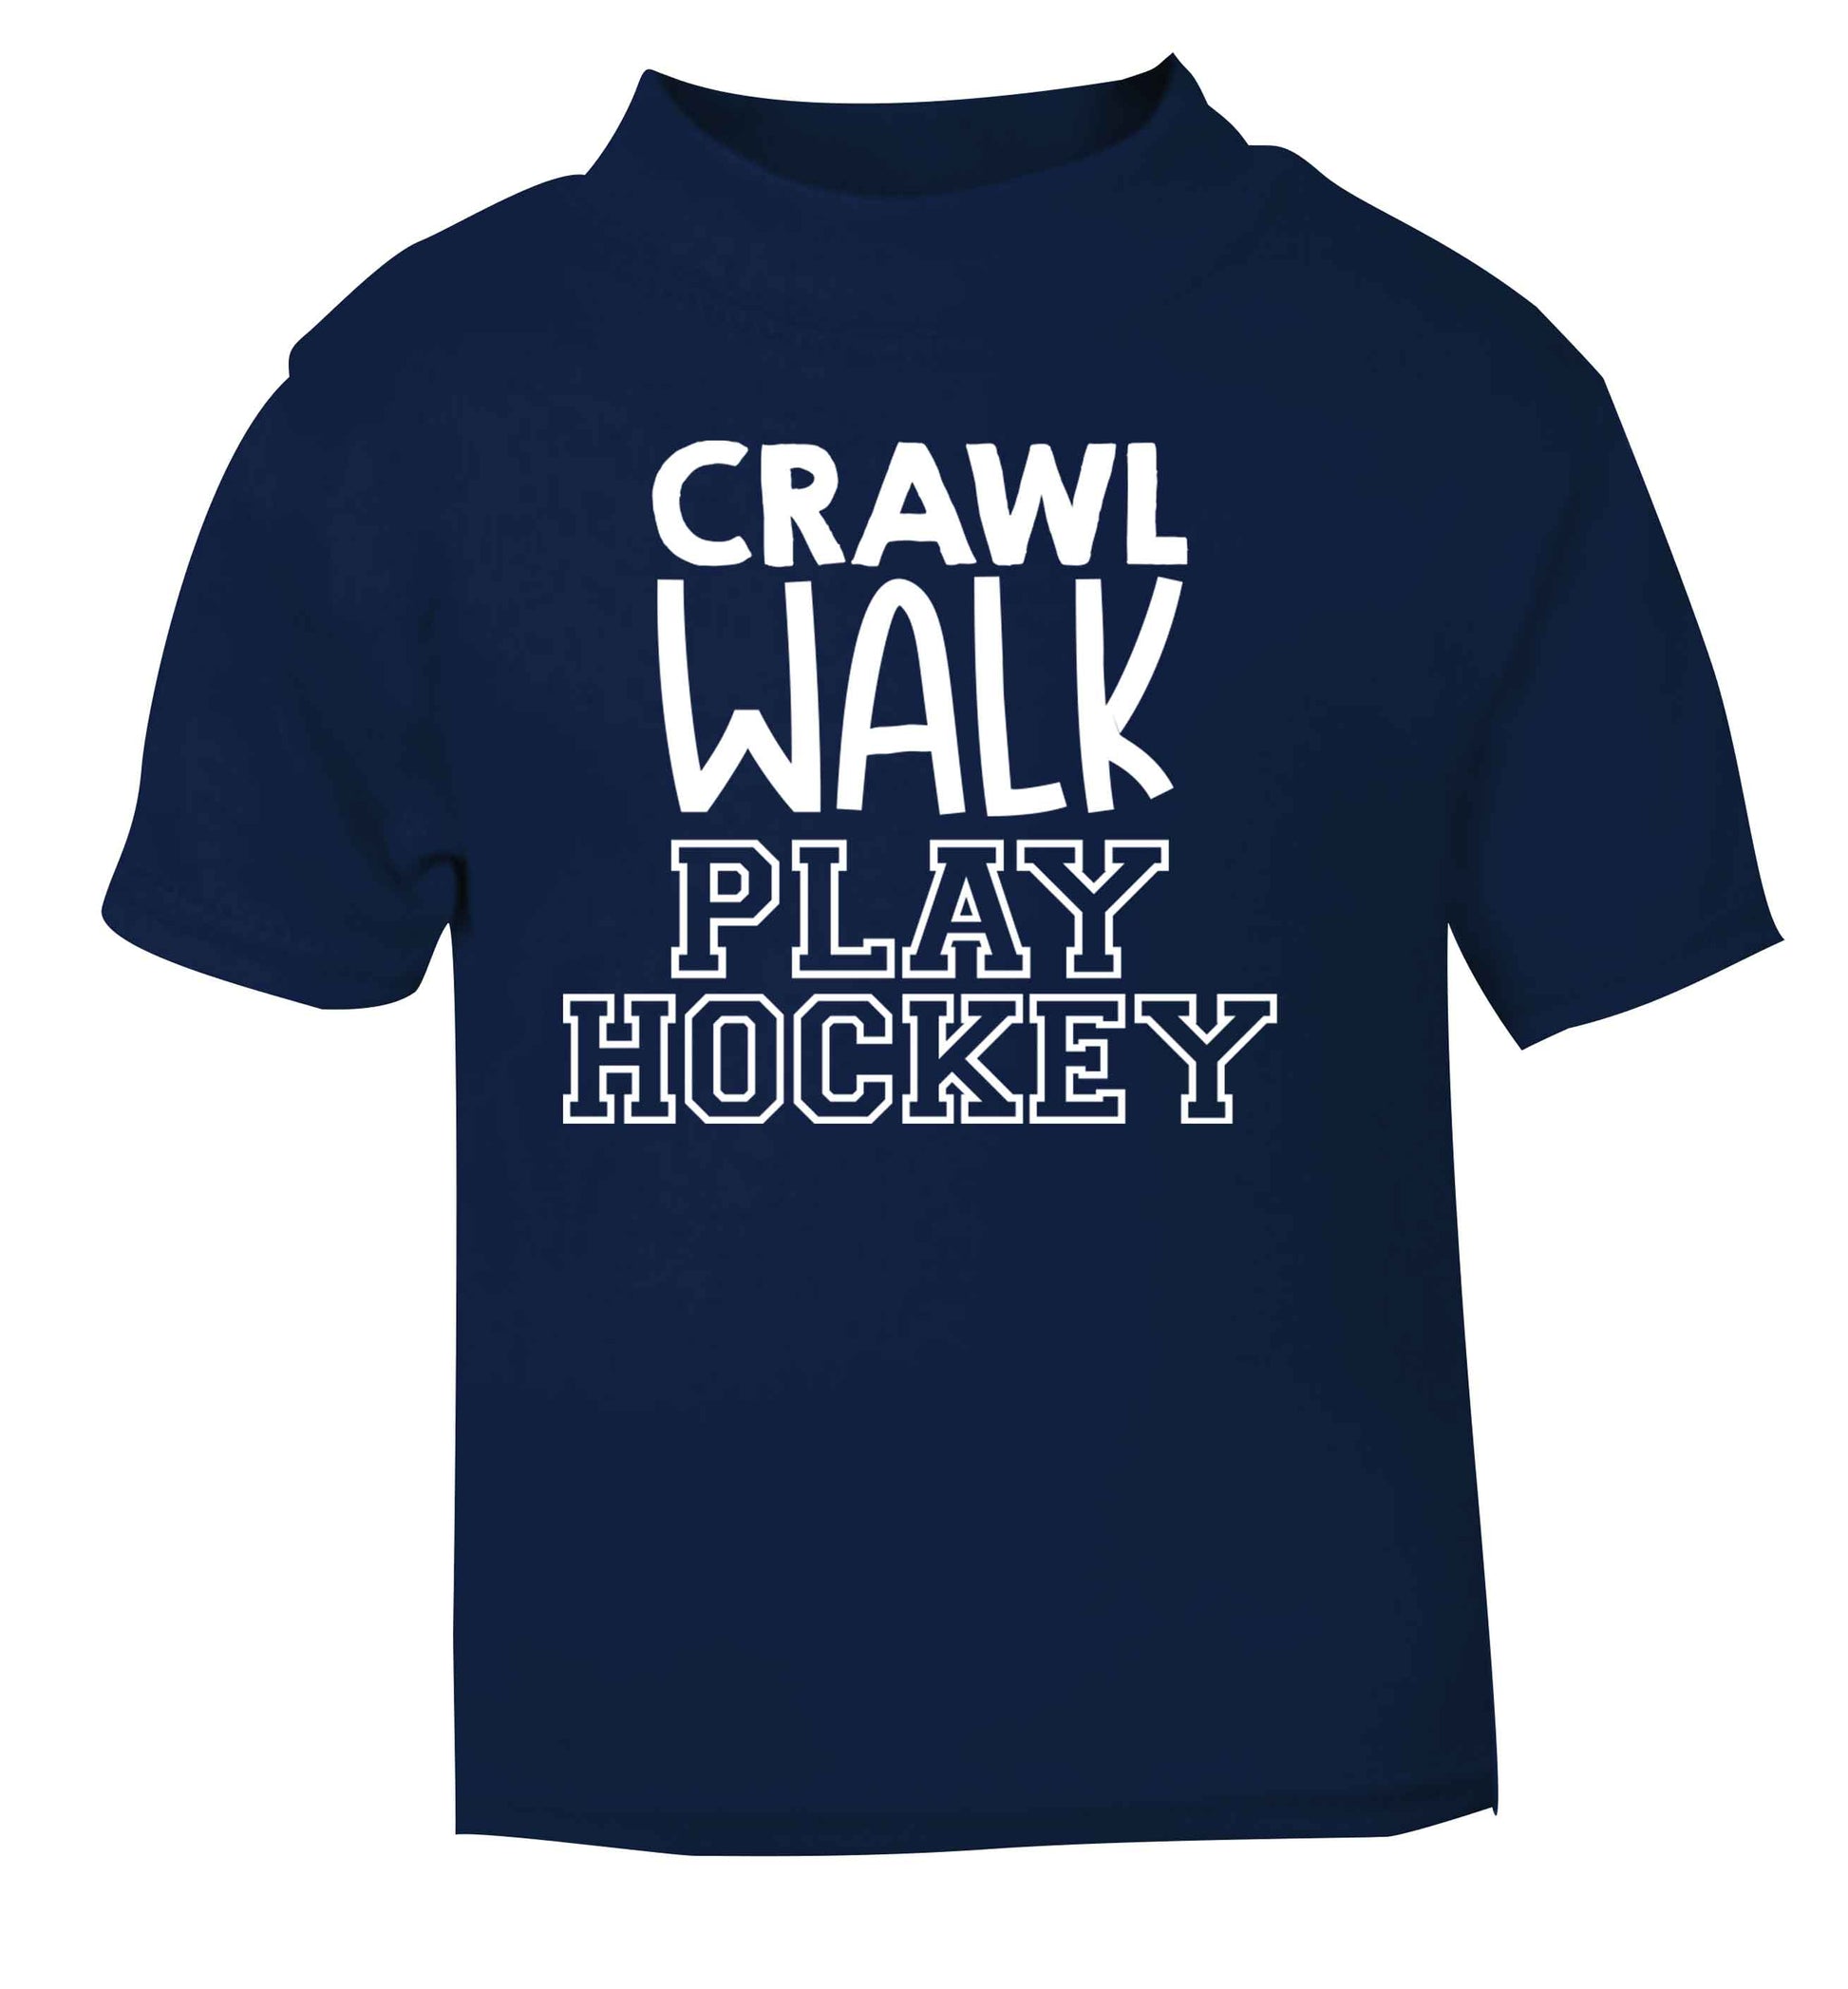 Crawl walk play hockey navy Baby Toddler Tshirt 2 Years